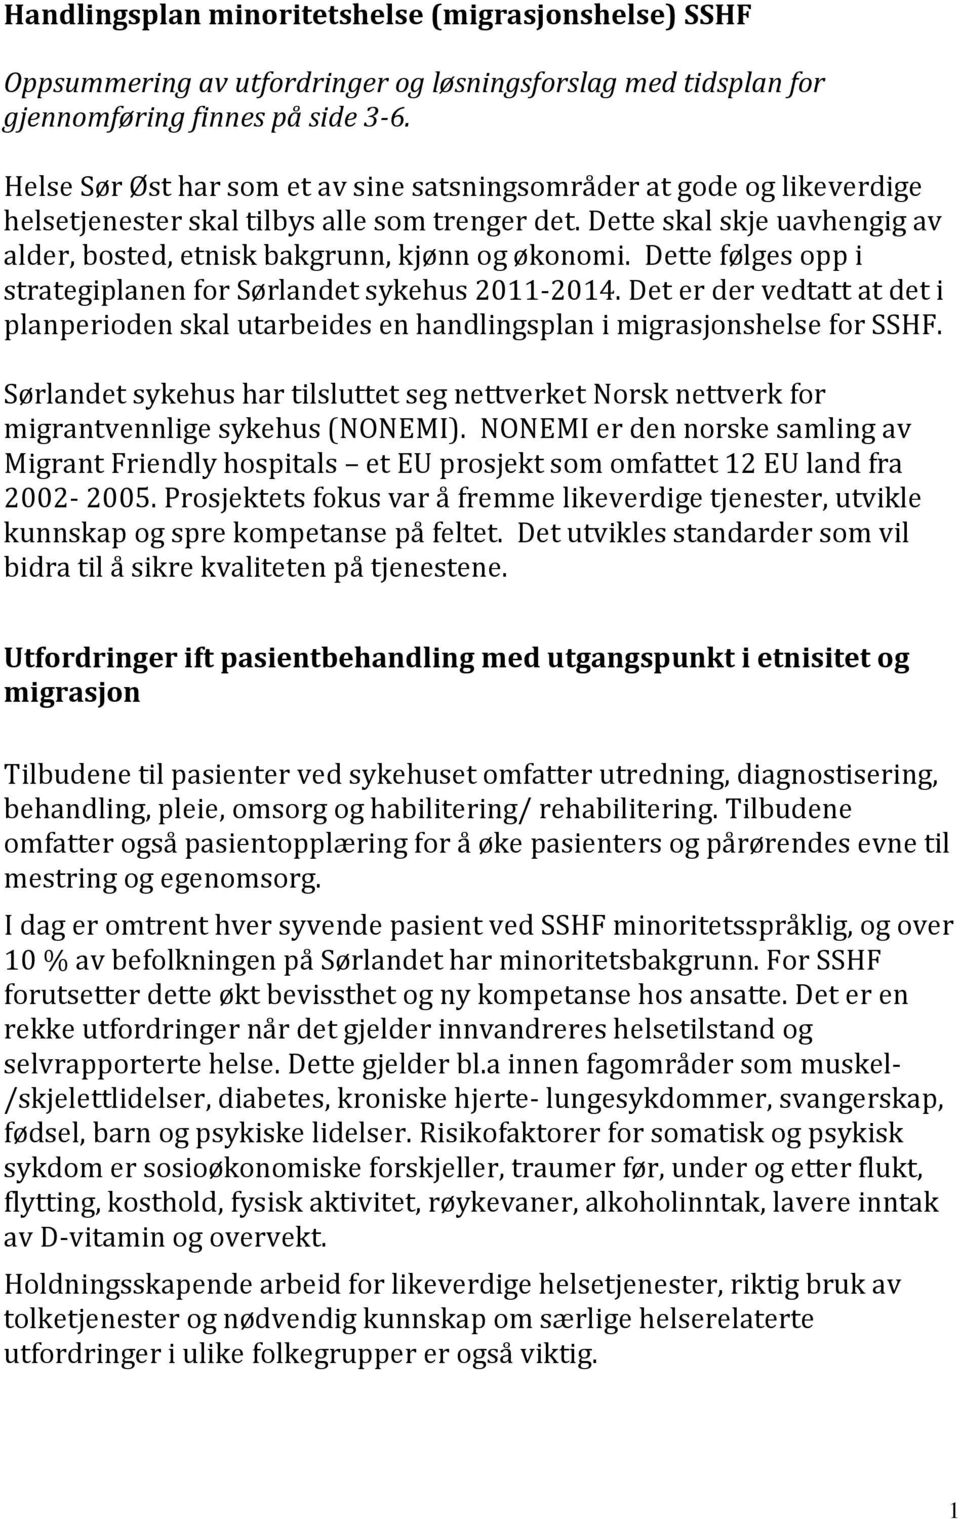 Dette følges opp i strategiplanen for Sørlandet sykehus 2011-2014. Det er der vedtatt at det i planperioden skal utarbeides en handlingsplan i migrasjonshelse for SSHF.